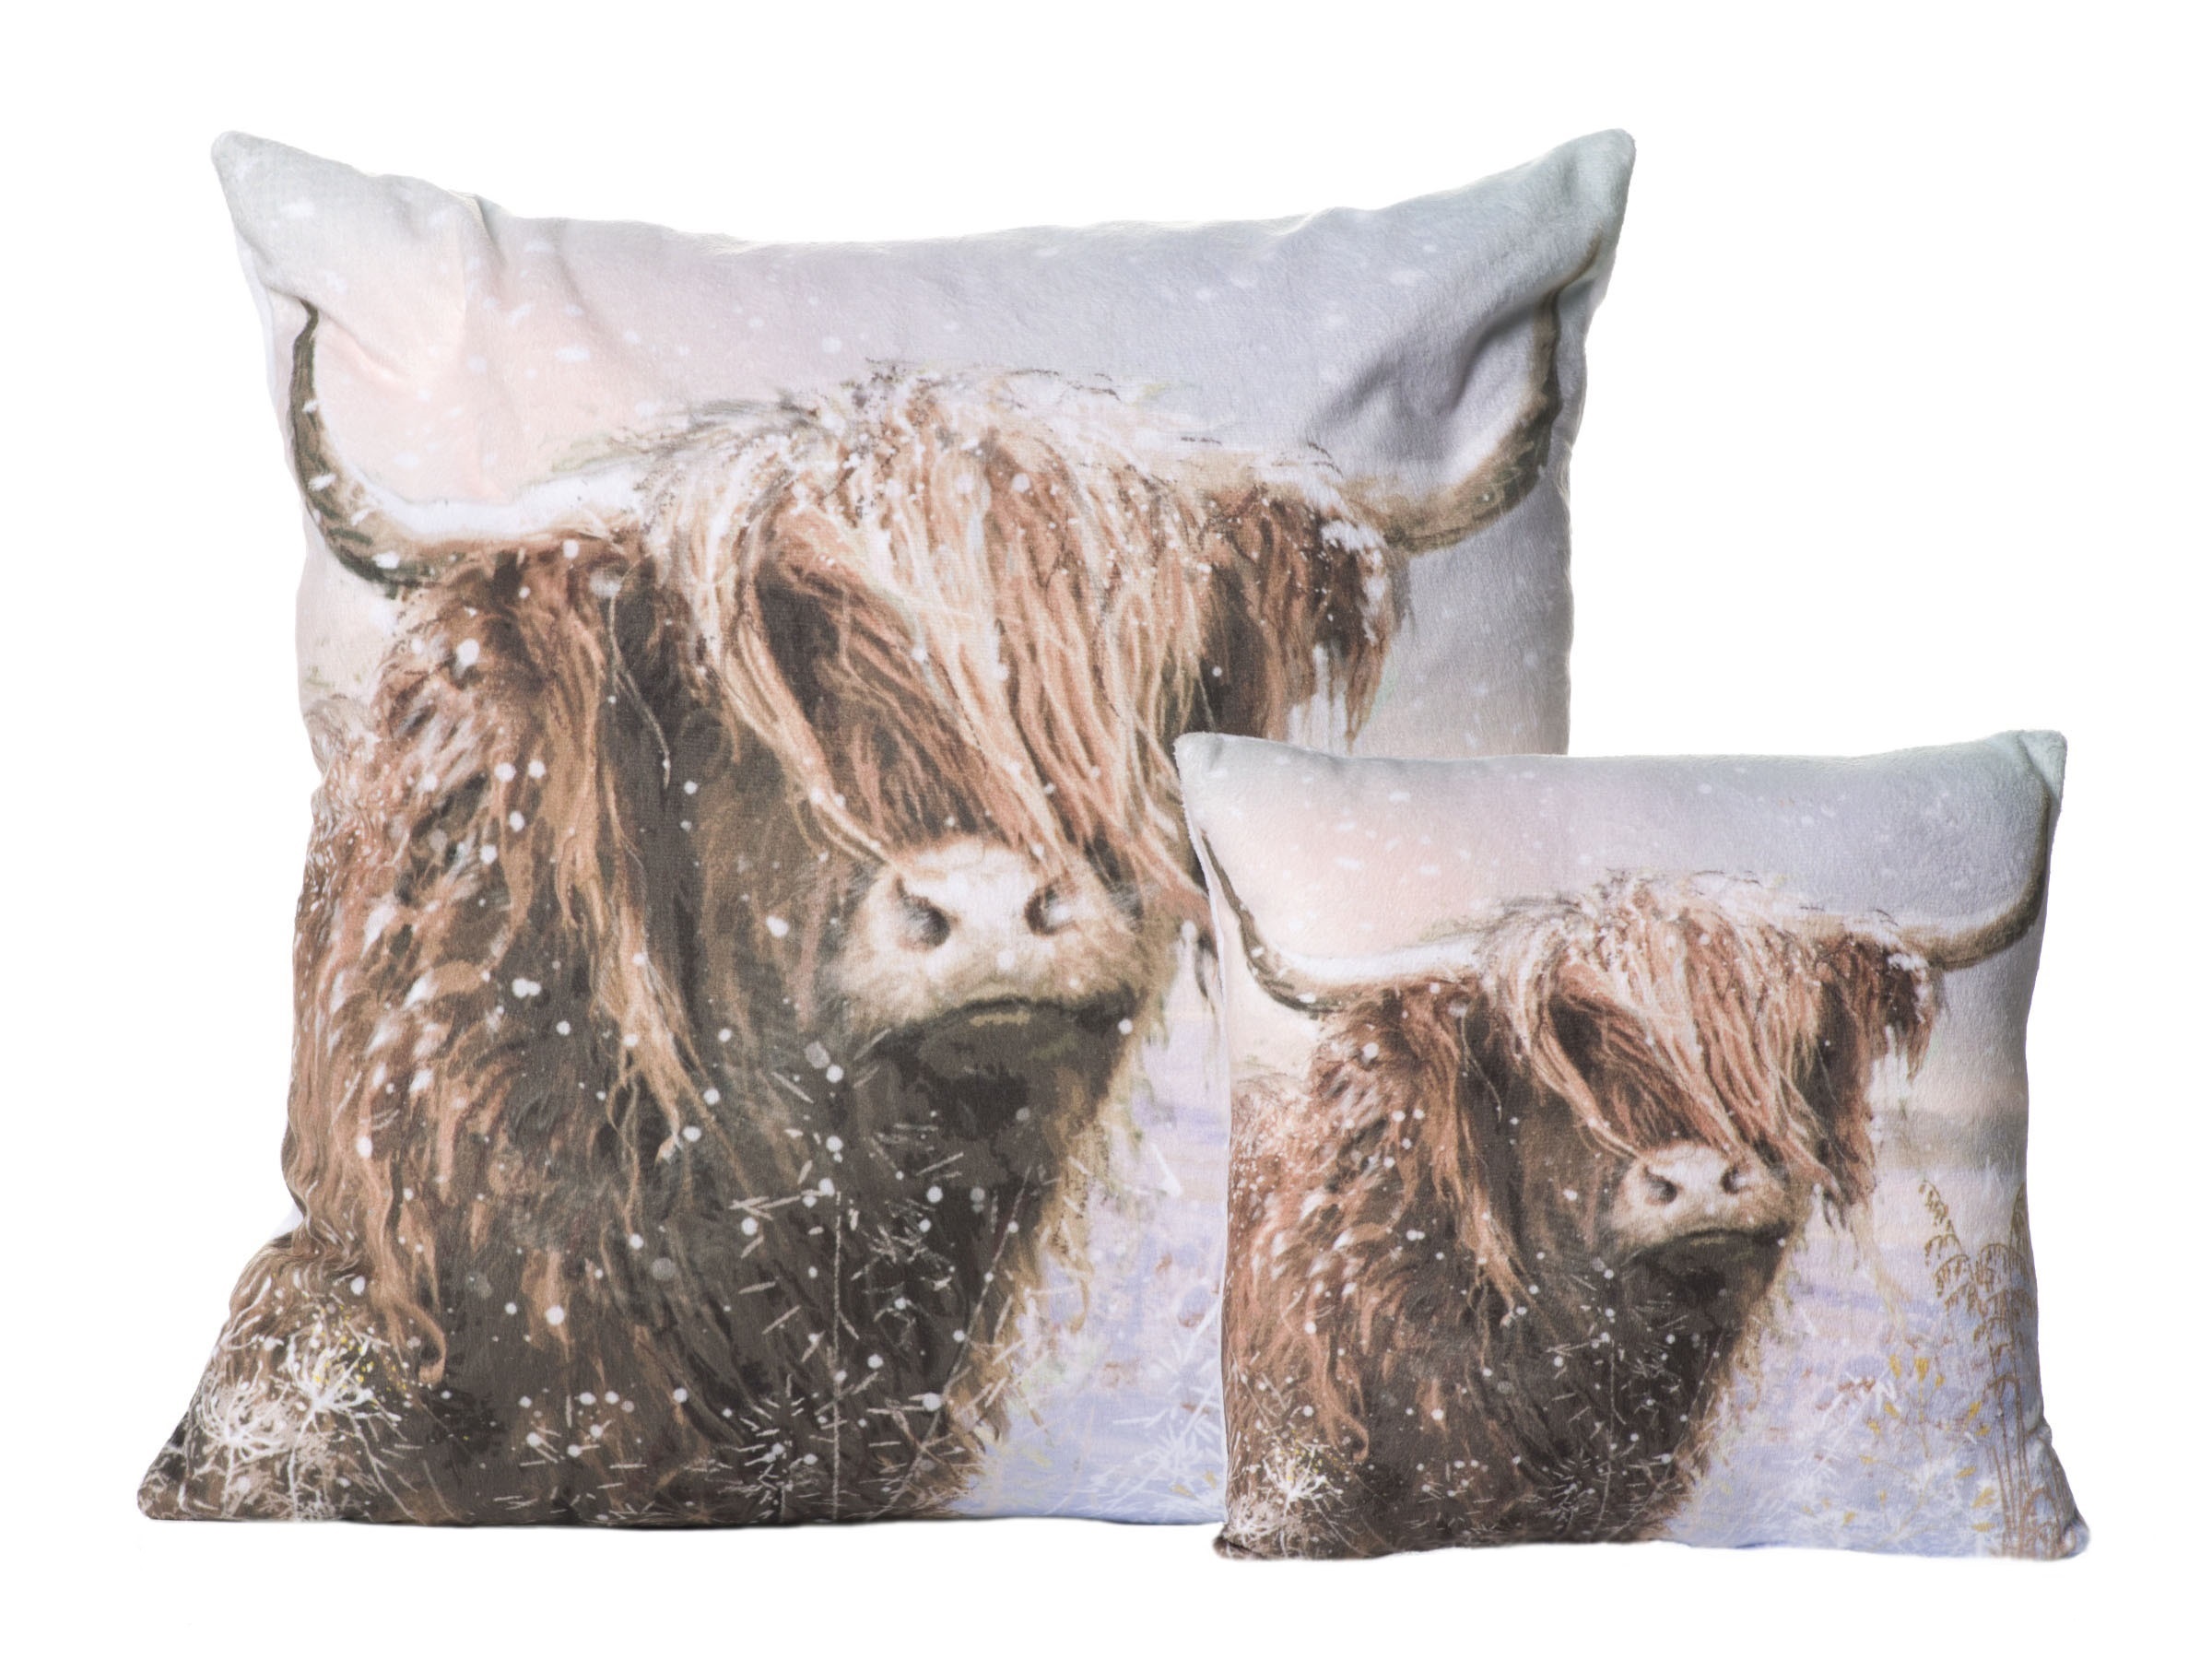 Winter cushions - cow.jpg